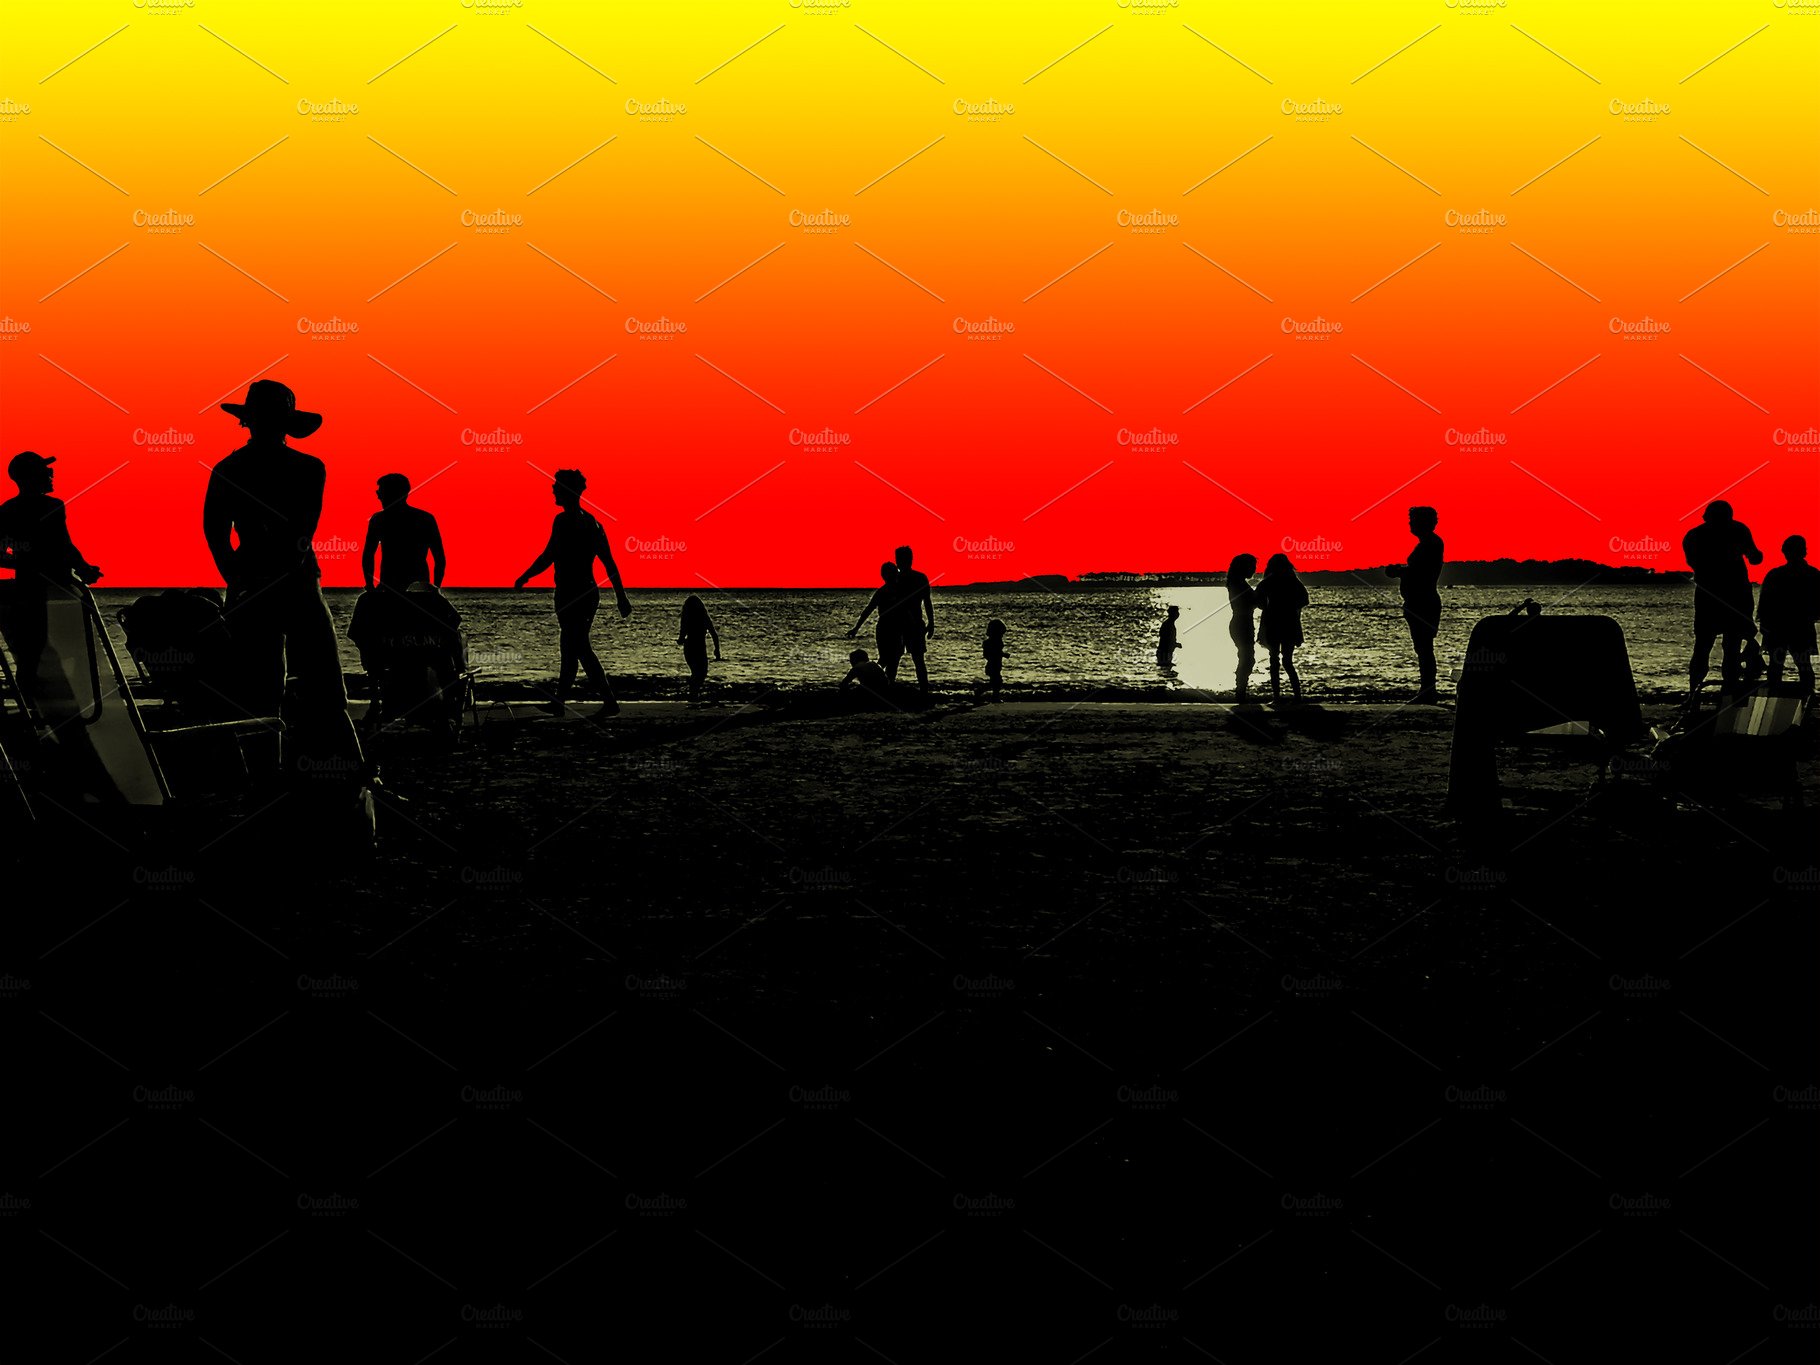 Sunset Beach Scene Illustration cover image.